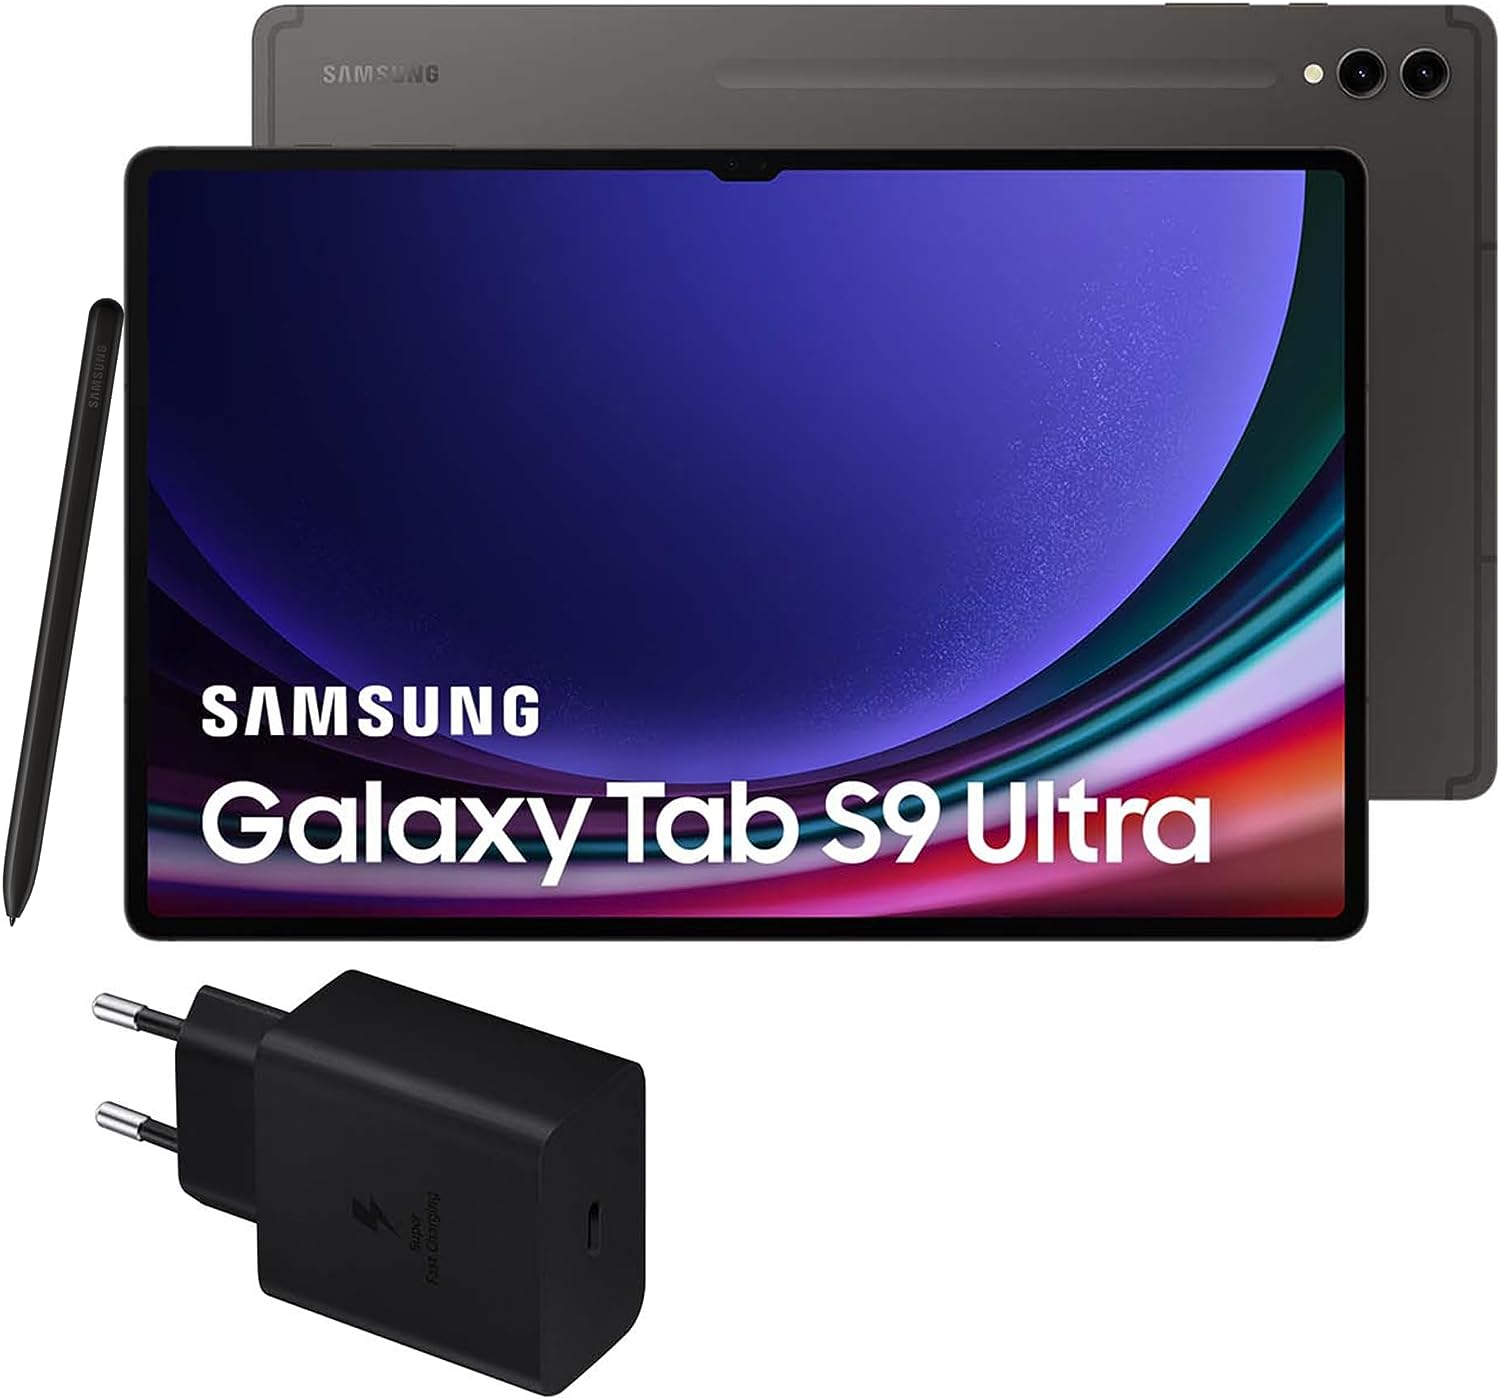 Samsung Galaxy Tab S9 Ultra vs. Samsung Galaxy Tab S9 vs. Samsung Galaxy Tab S9+